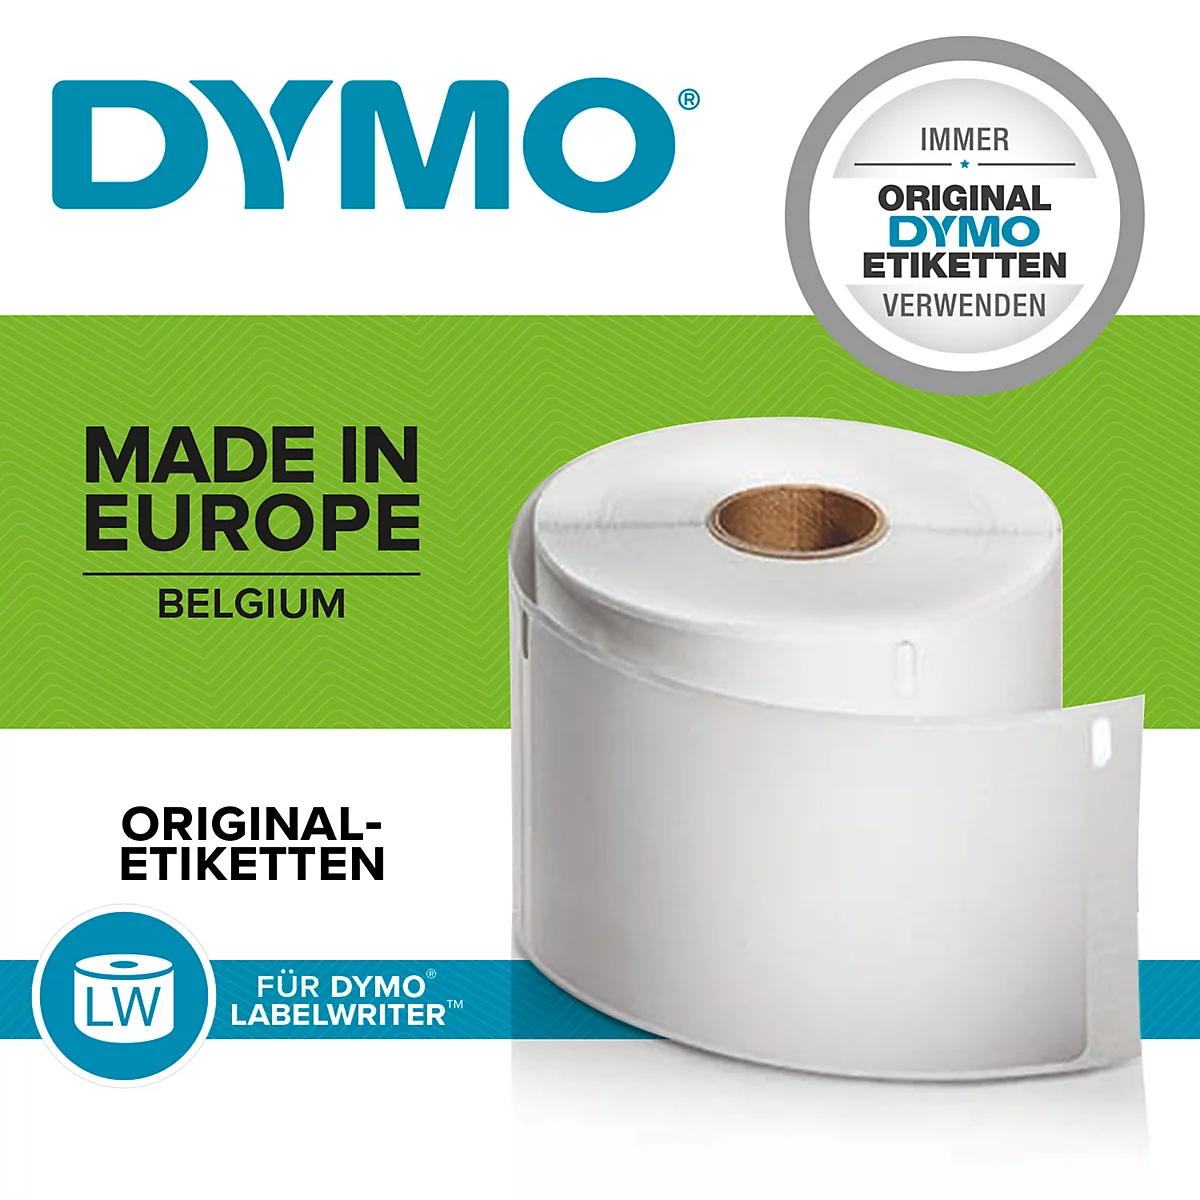 DYMO LabelWriter Etiketten günstig kaufen